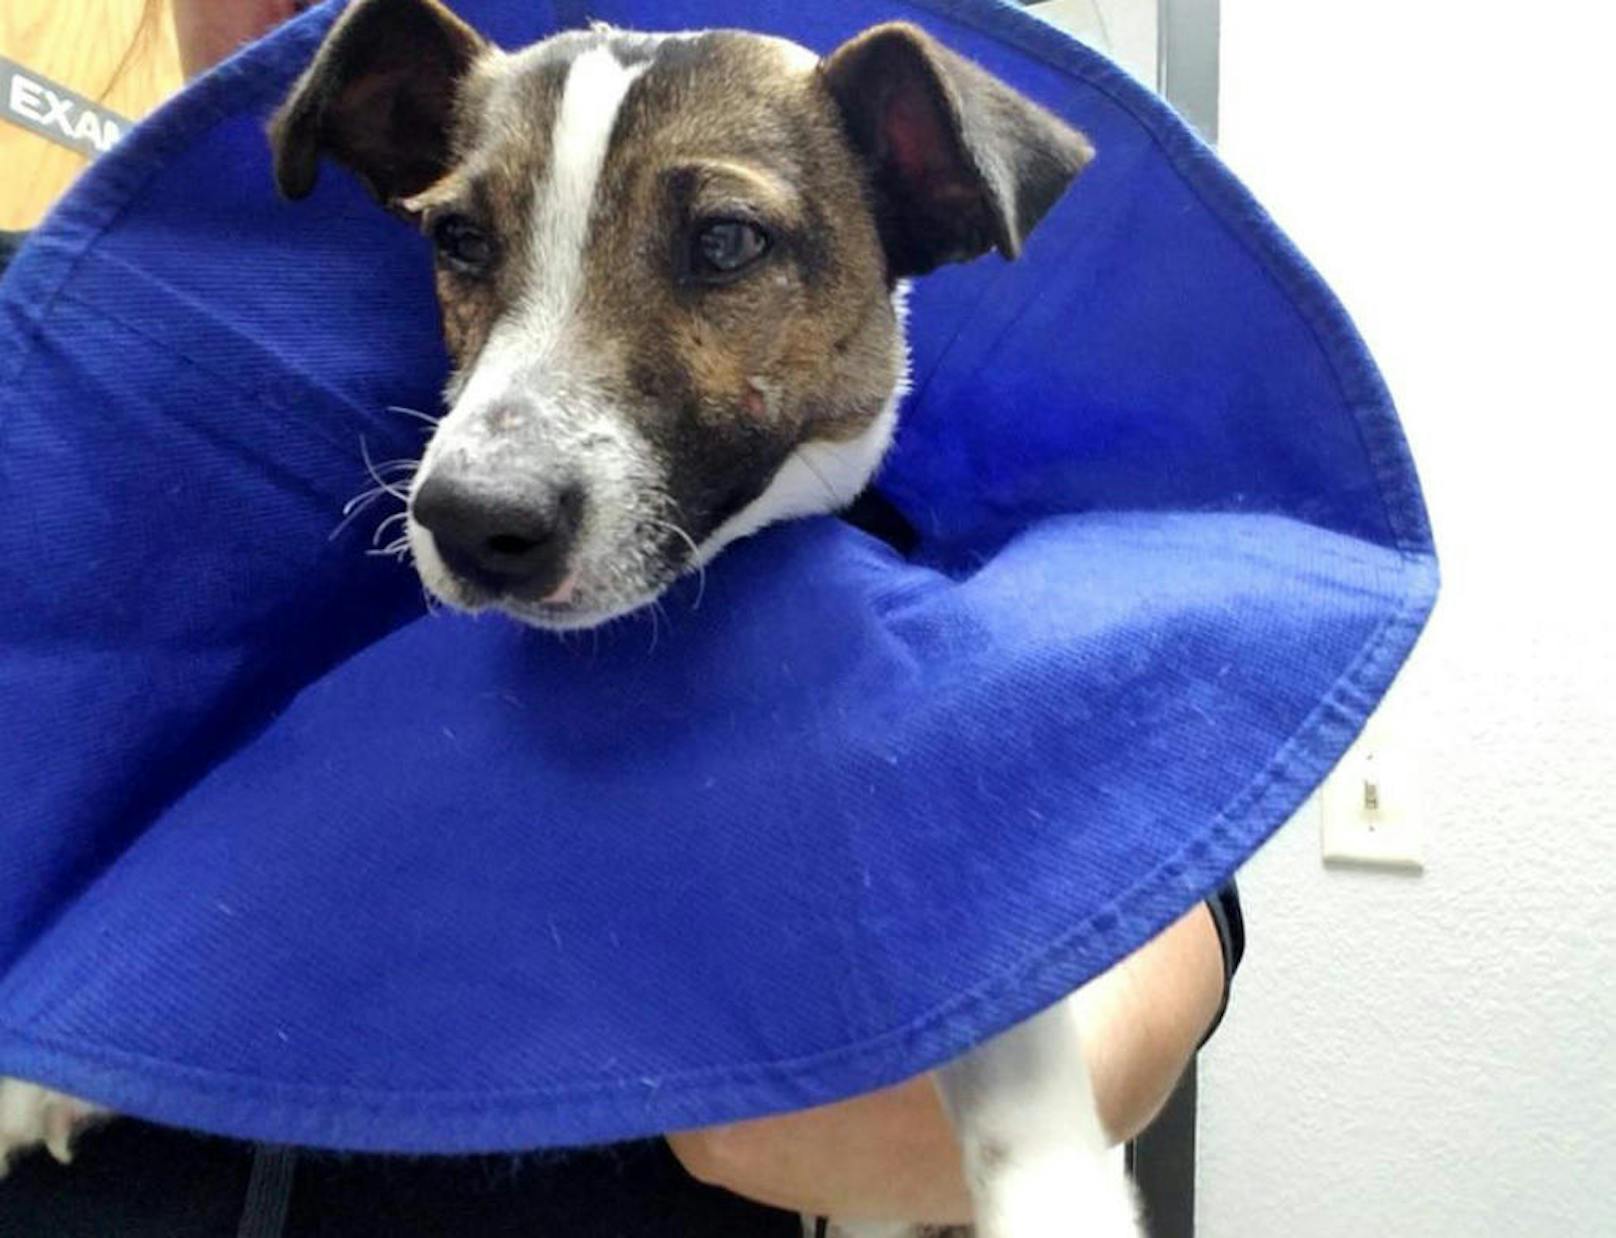 Ein Tierarzt kümmerte sich um den Hund und konnte ihn von seinem Leiden befreien. Er befindet sich auf dem Weg der Besserung und erholt sich von seinen Strapazen. Nun sucht die Polizei nach dem Tierquäler.